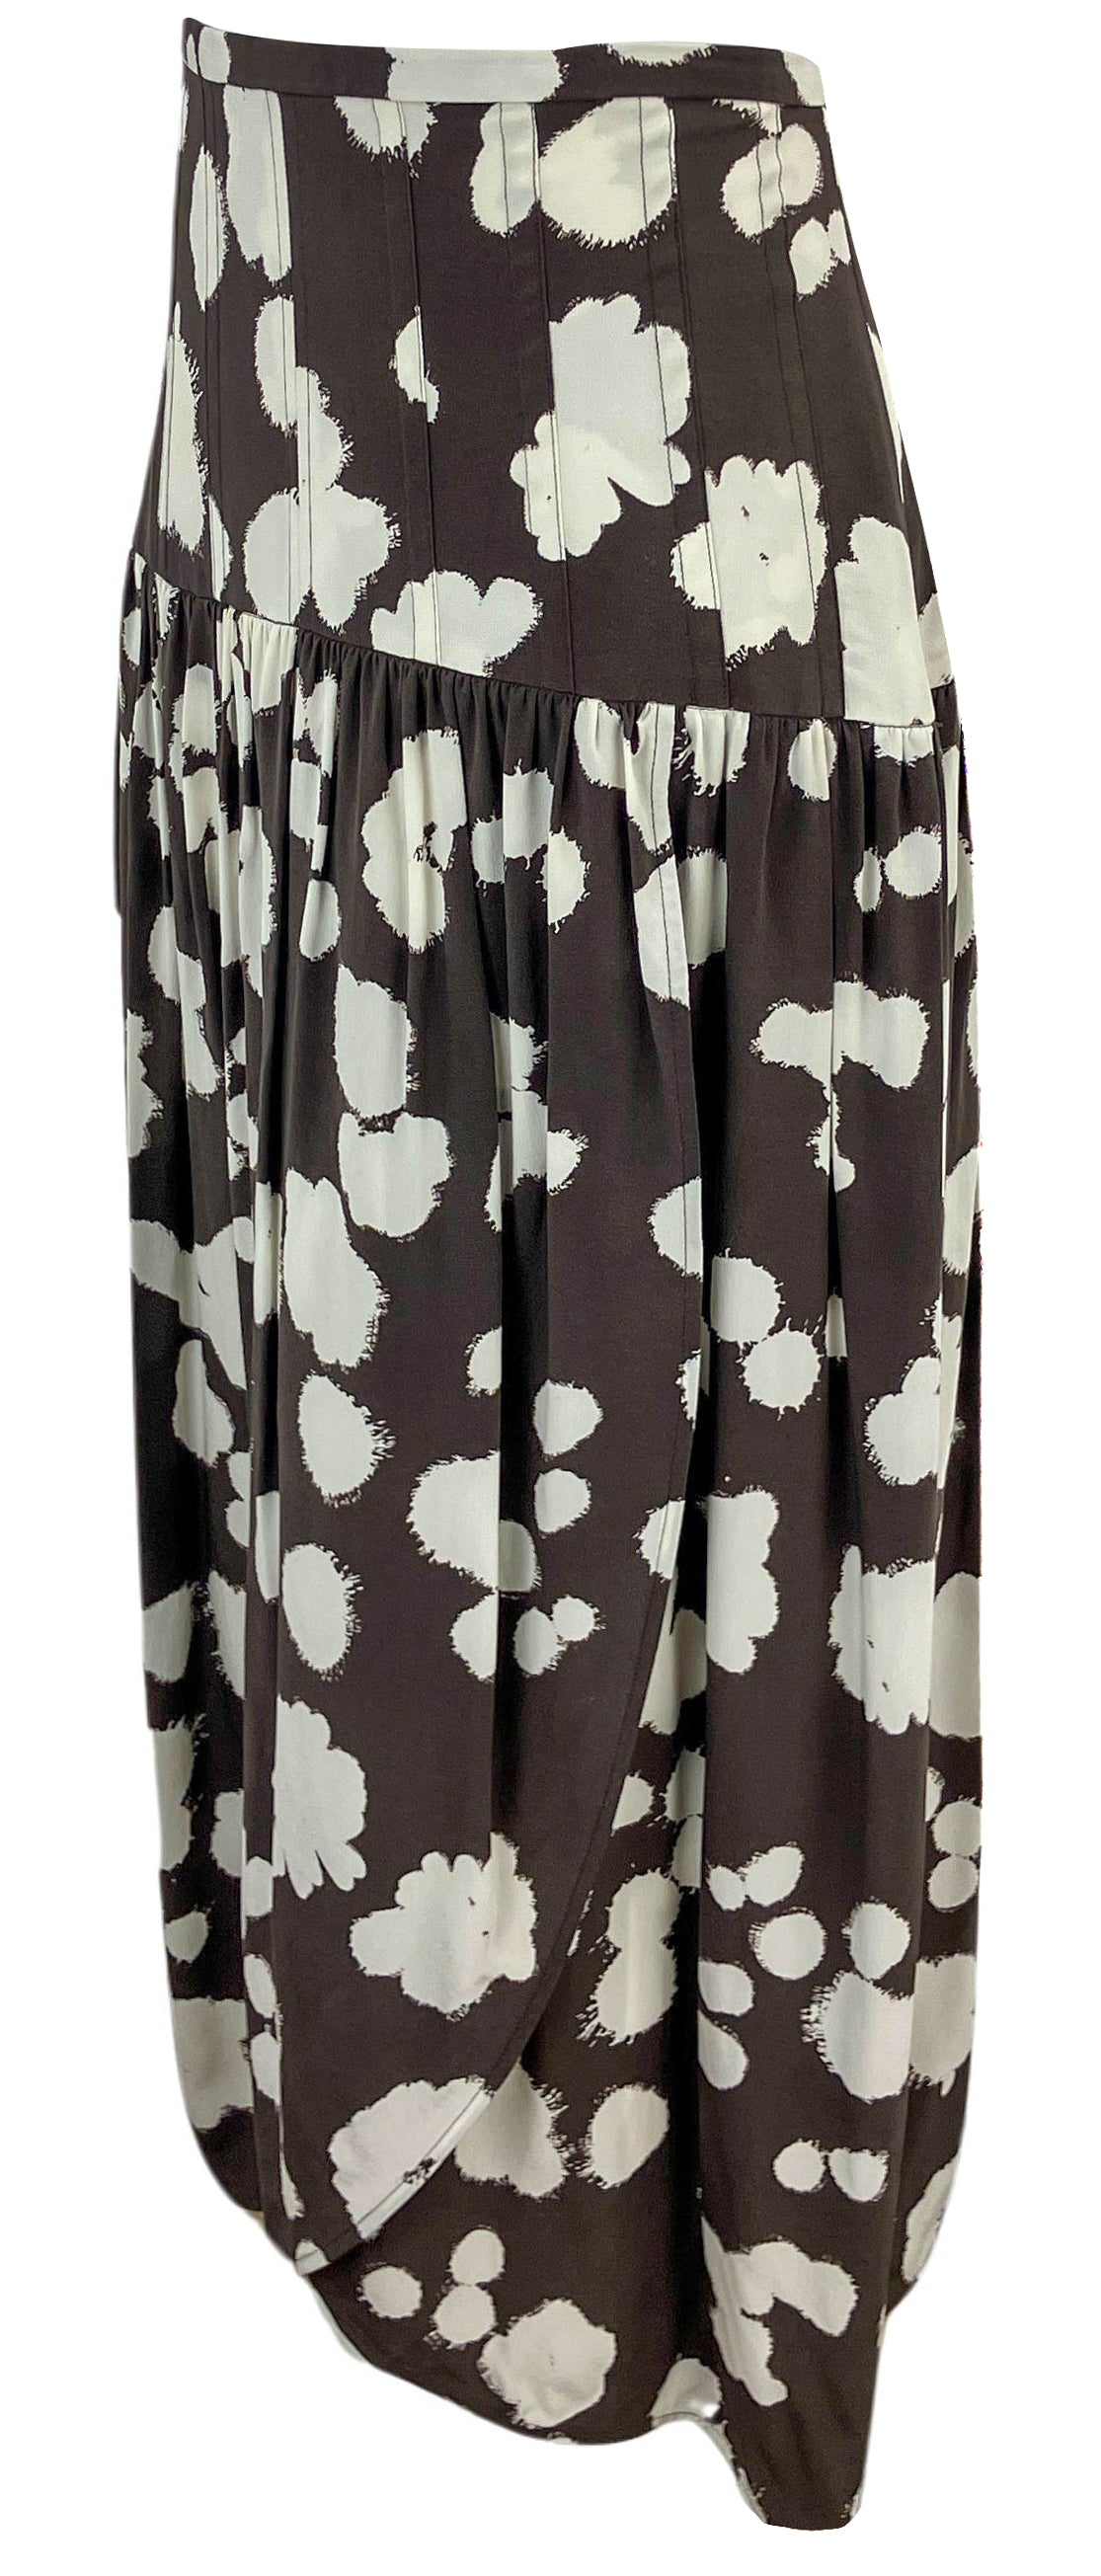 Lee Mathews Clover Skirt in Tiramisu - Discounts on Lee Mathews at UAL